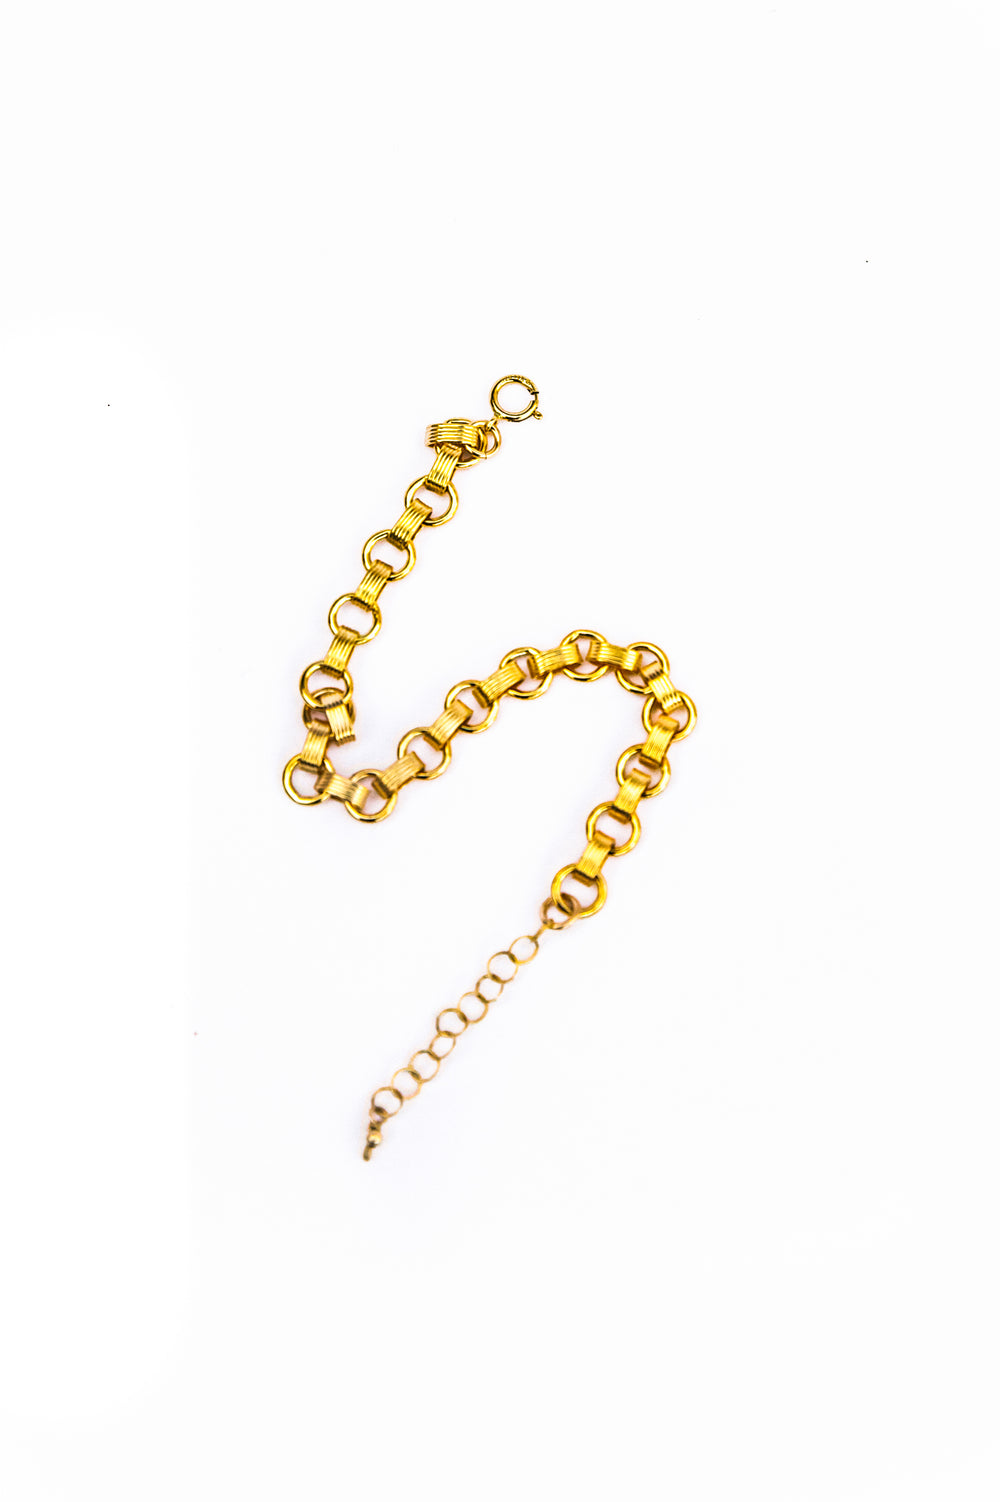 Gold Marilyn Bracelet